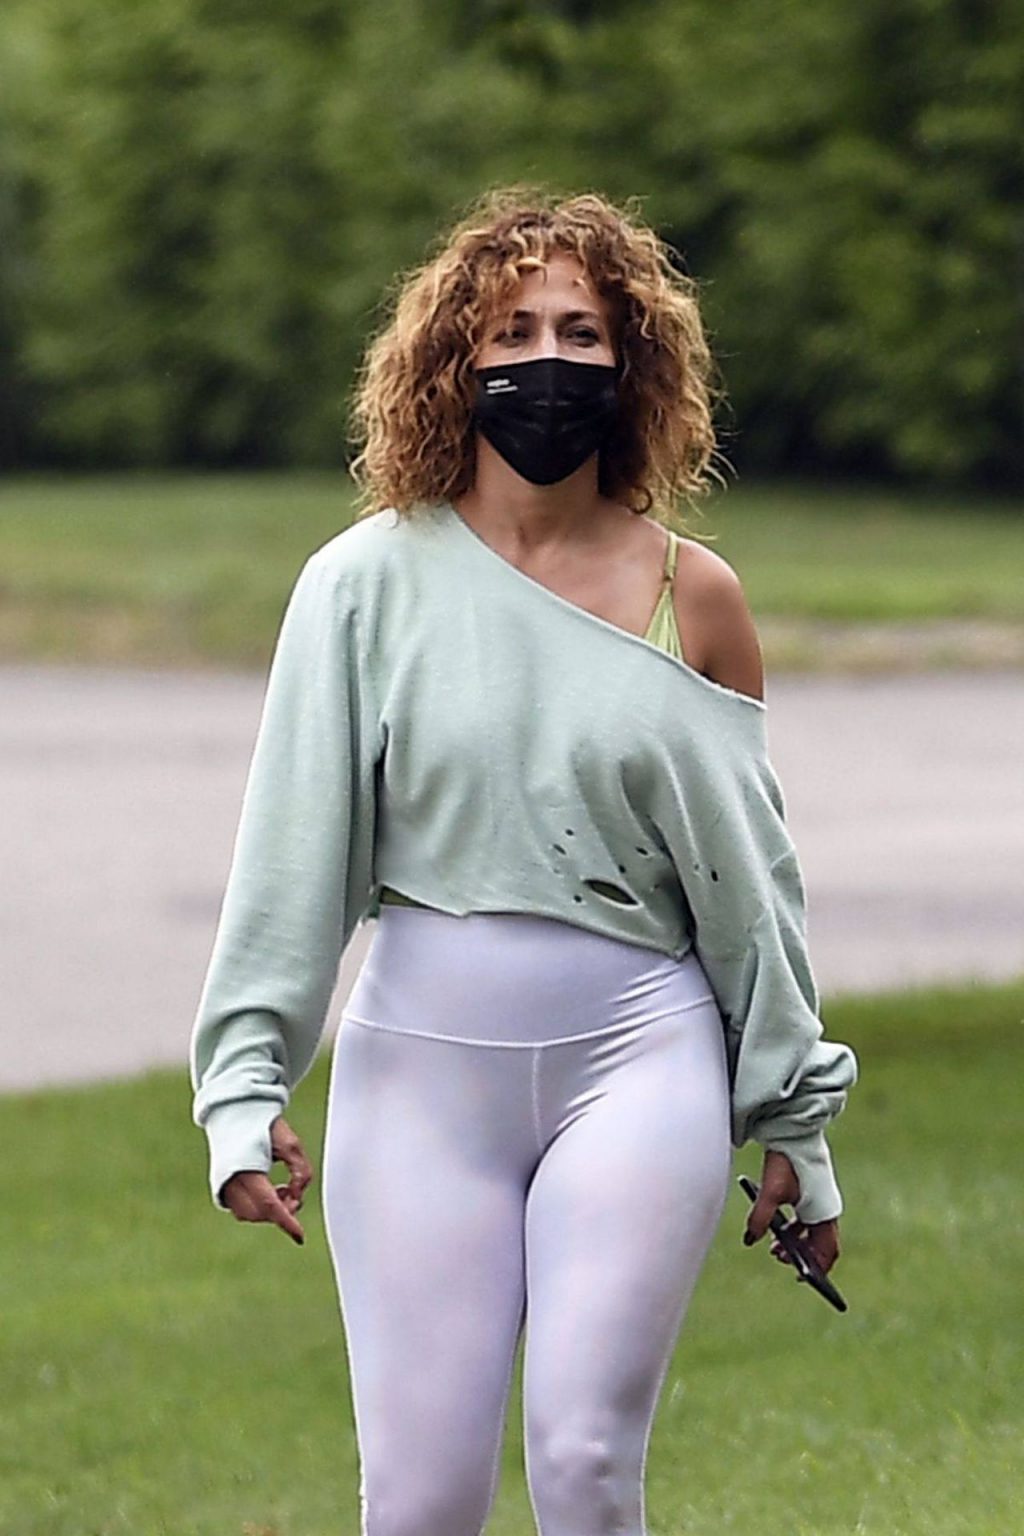 singer sexy photos Jennifer Lopez Instagram celebrity butt beach ass actress 